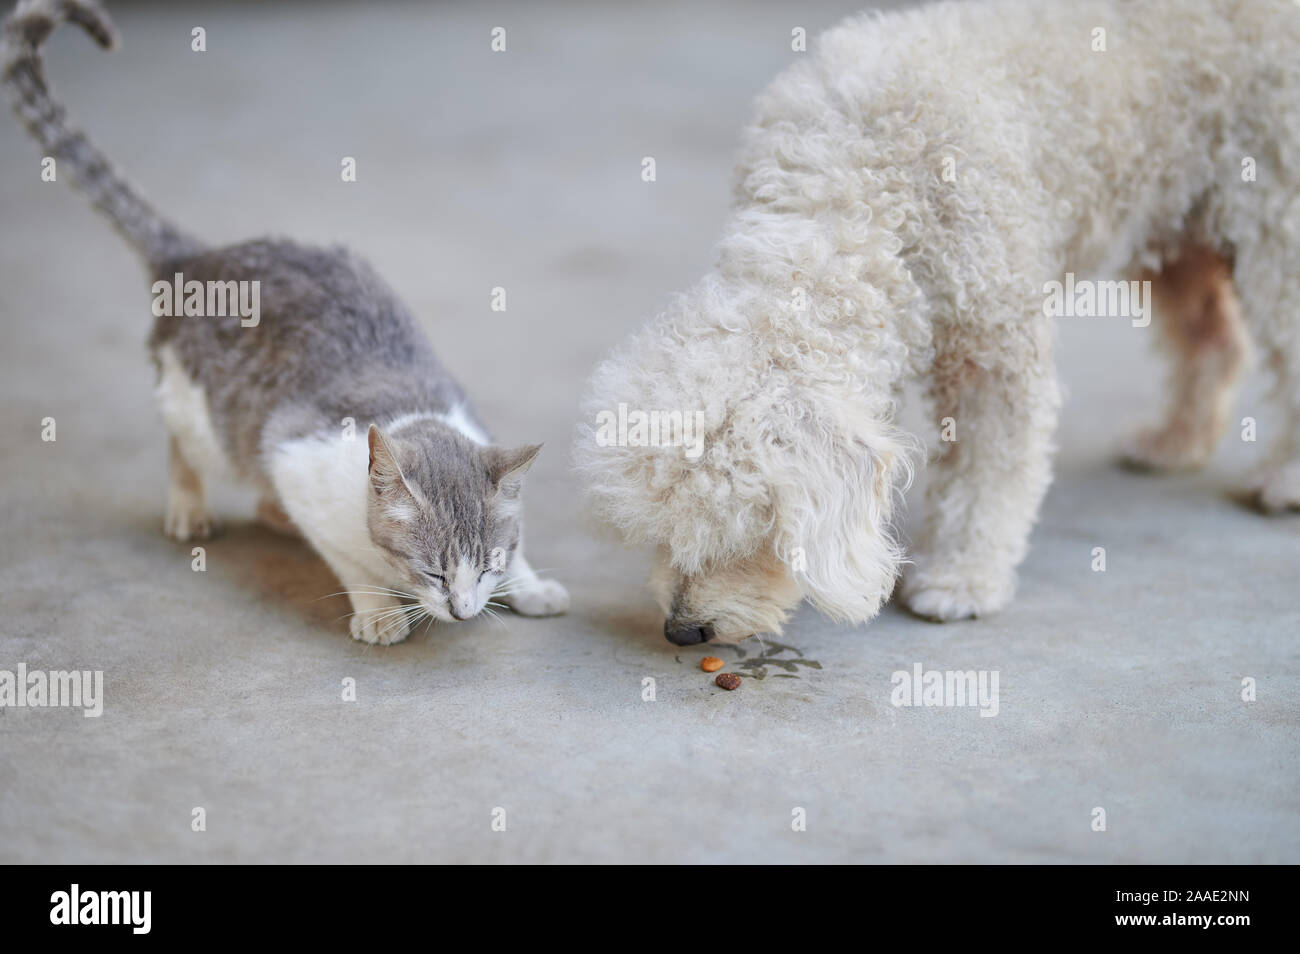 Cane e gatto condividendo cibo insieme. Amichevole tema animali domestici Foto Stock